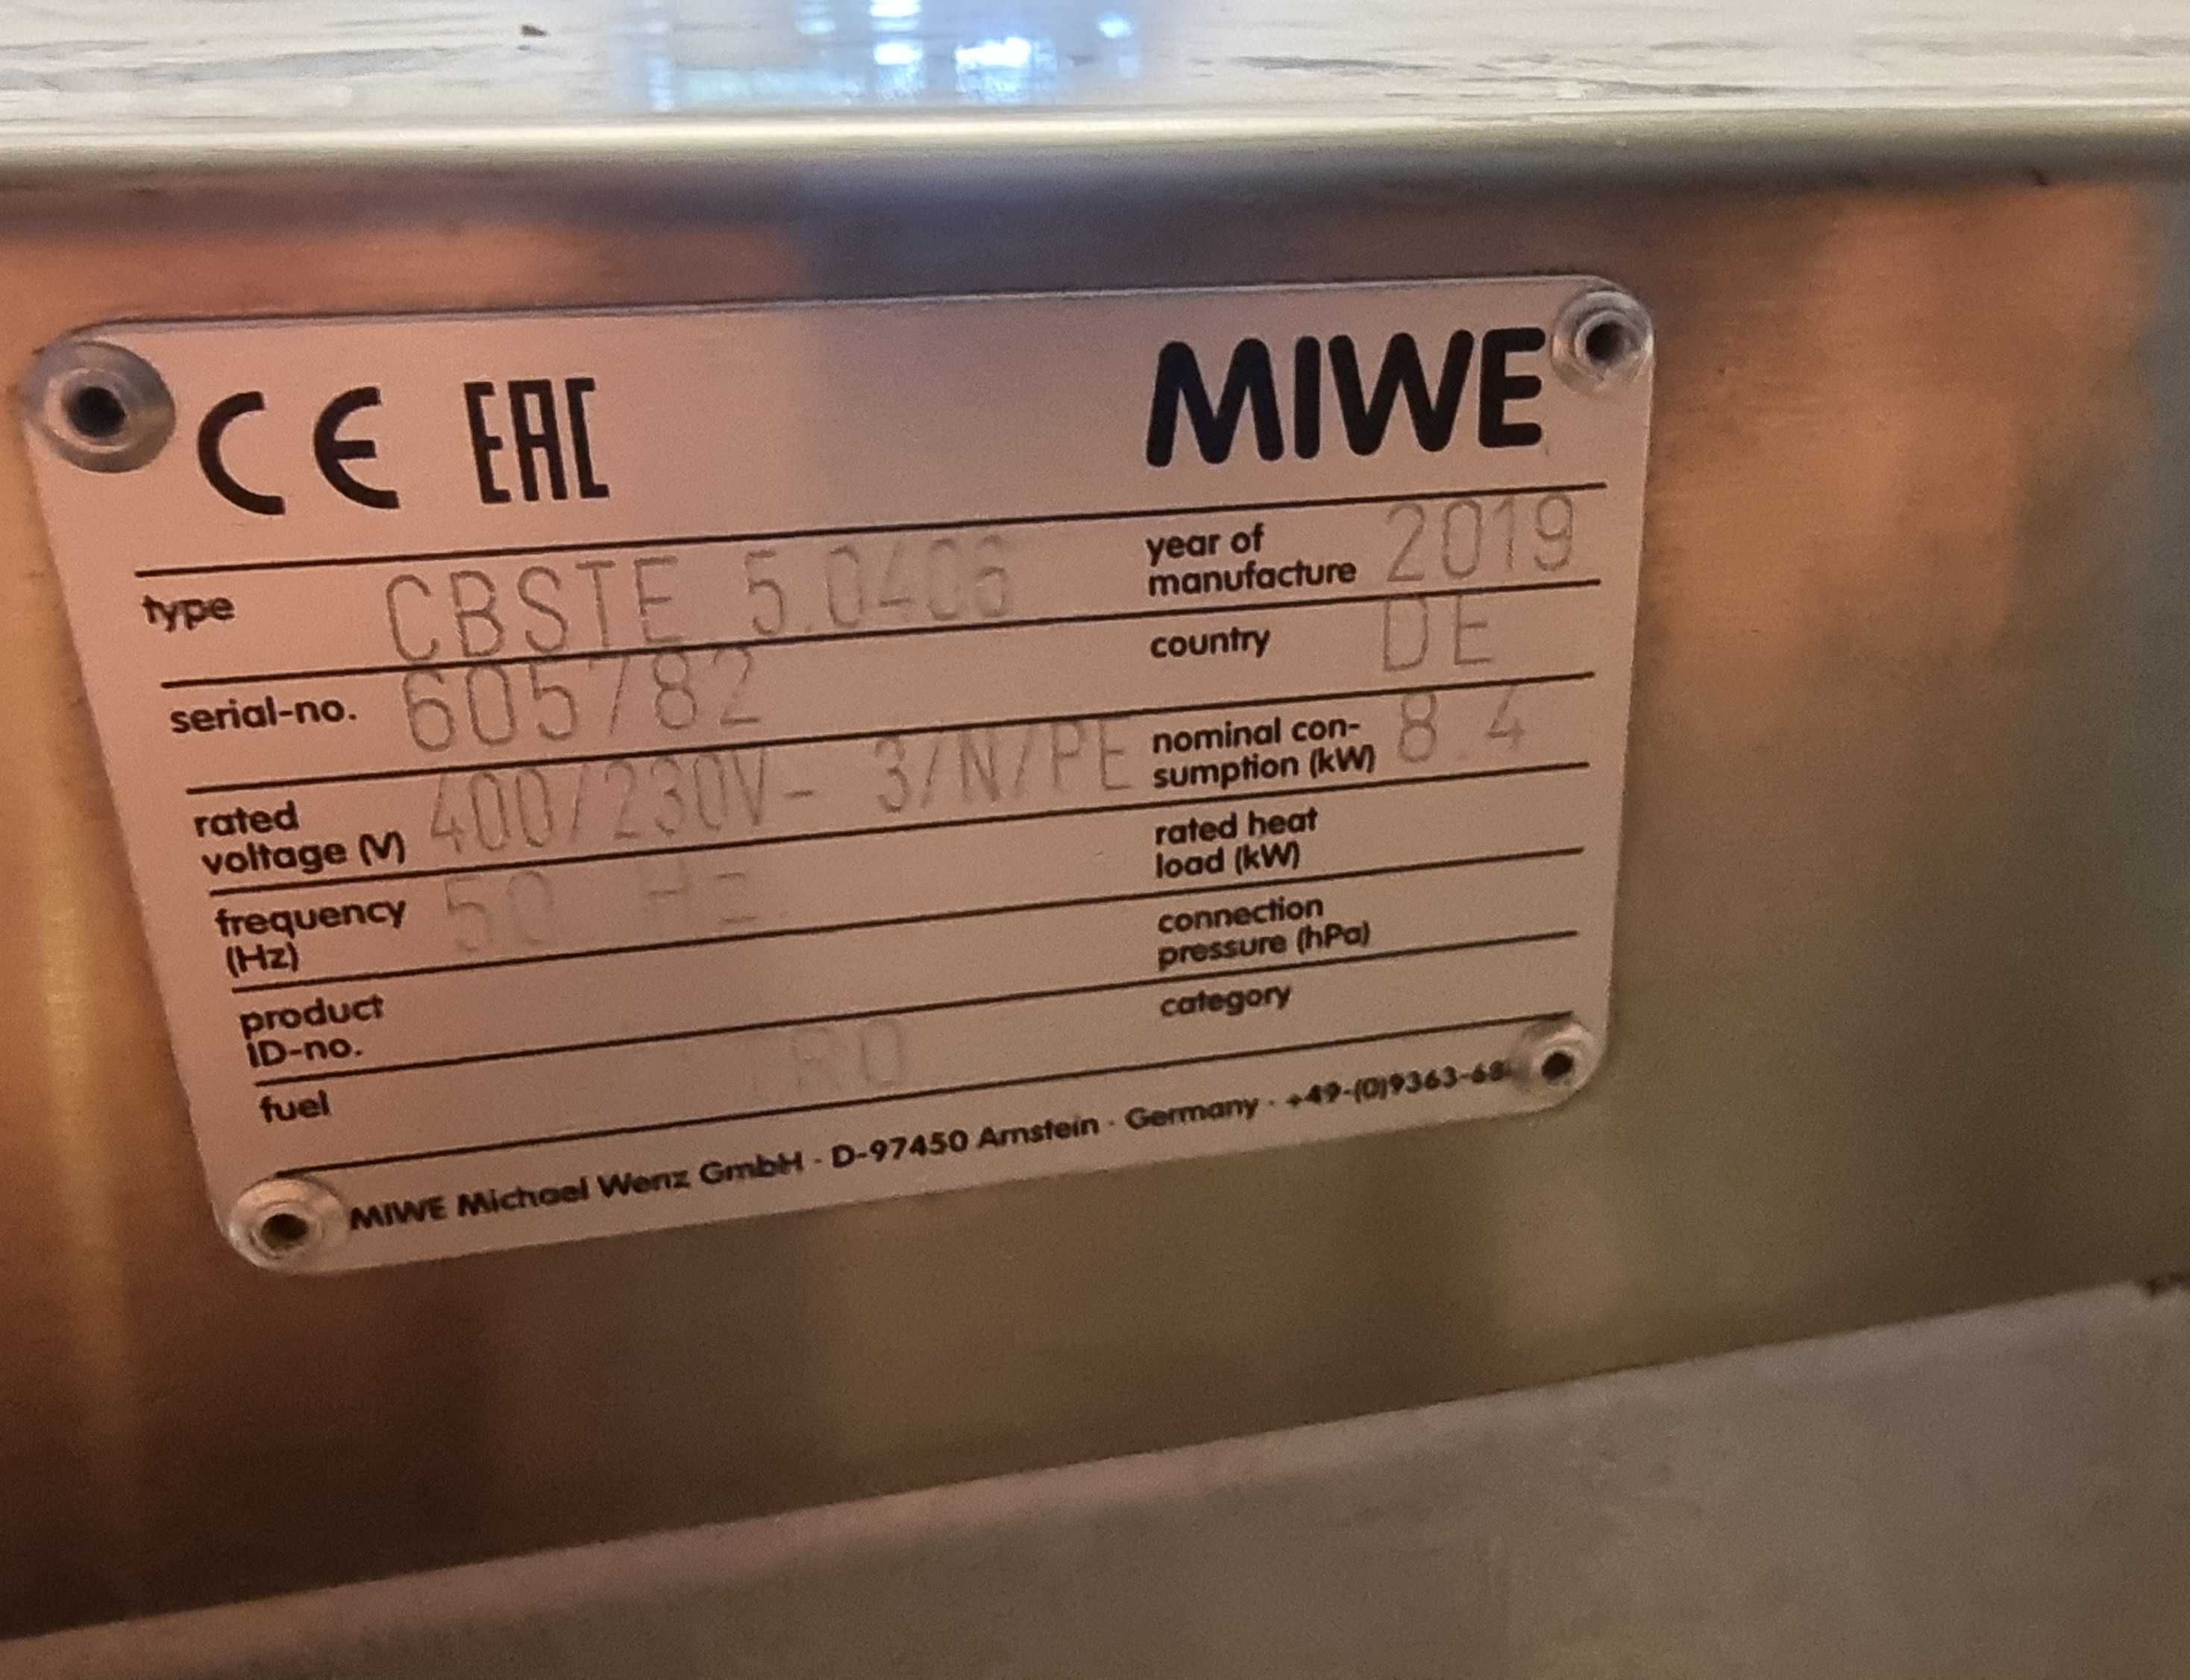 Cuptor  electric patiserie MIWE 2019